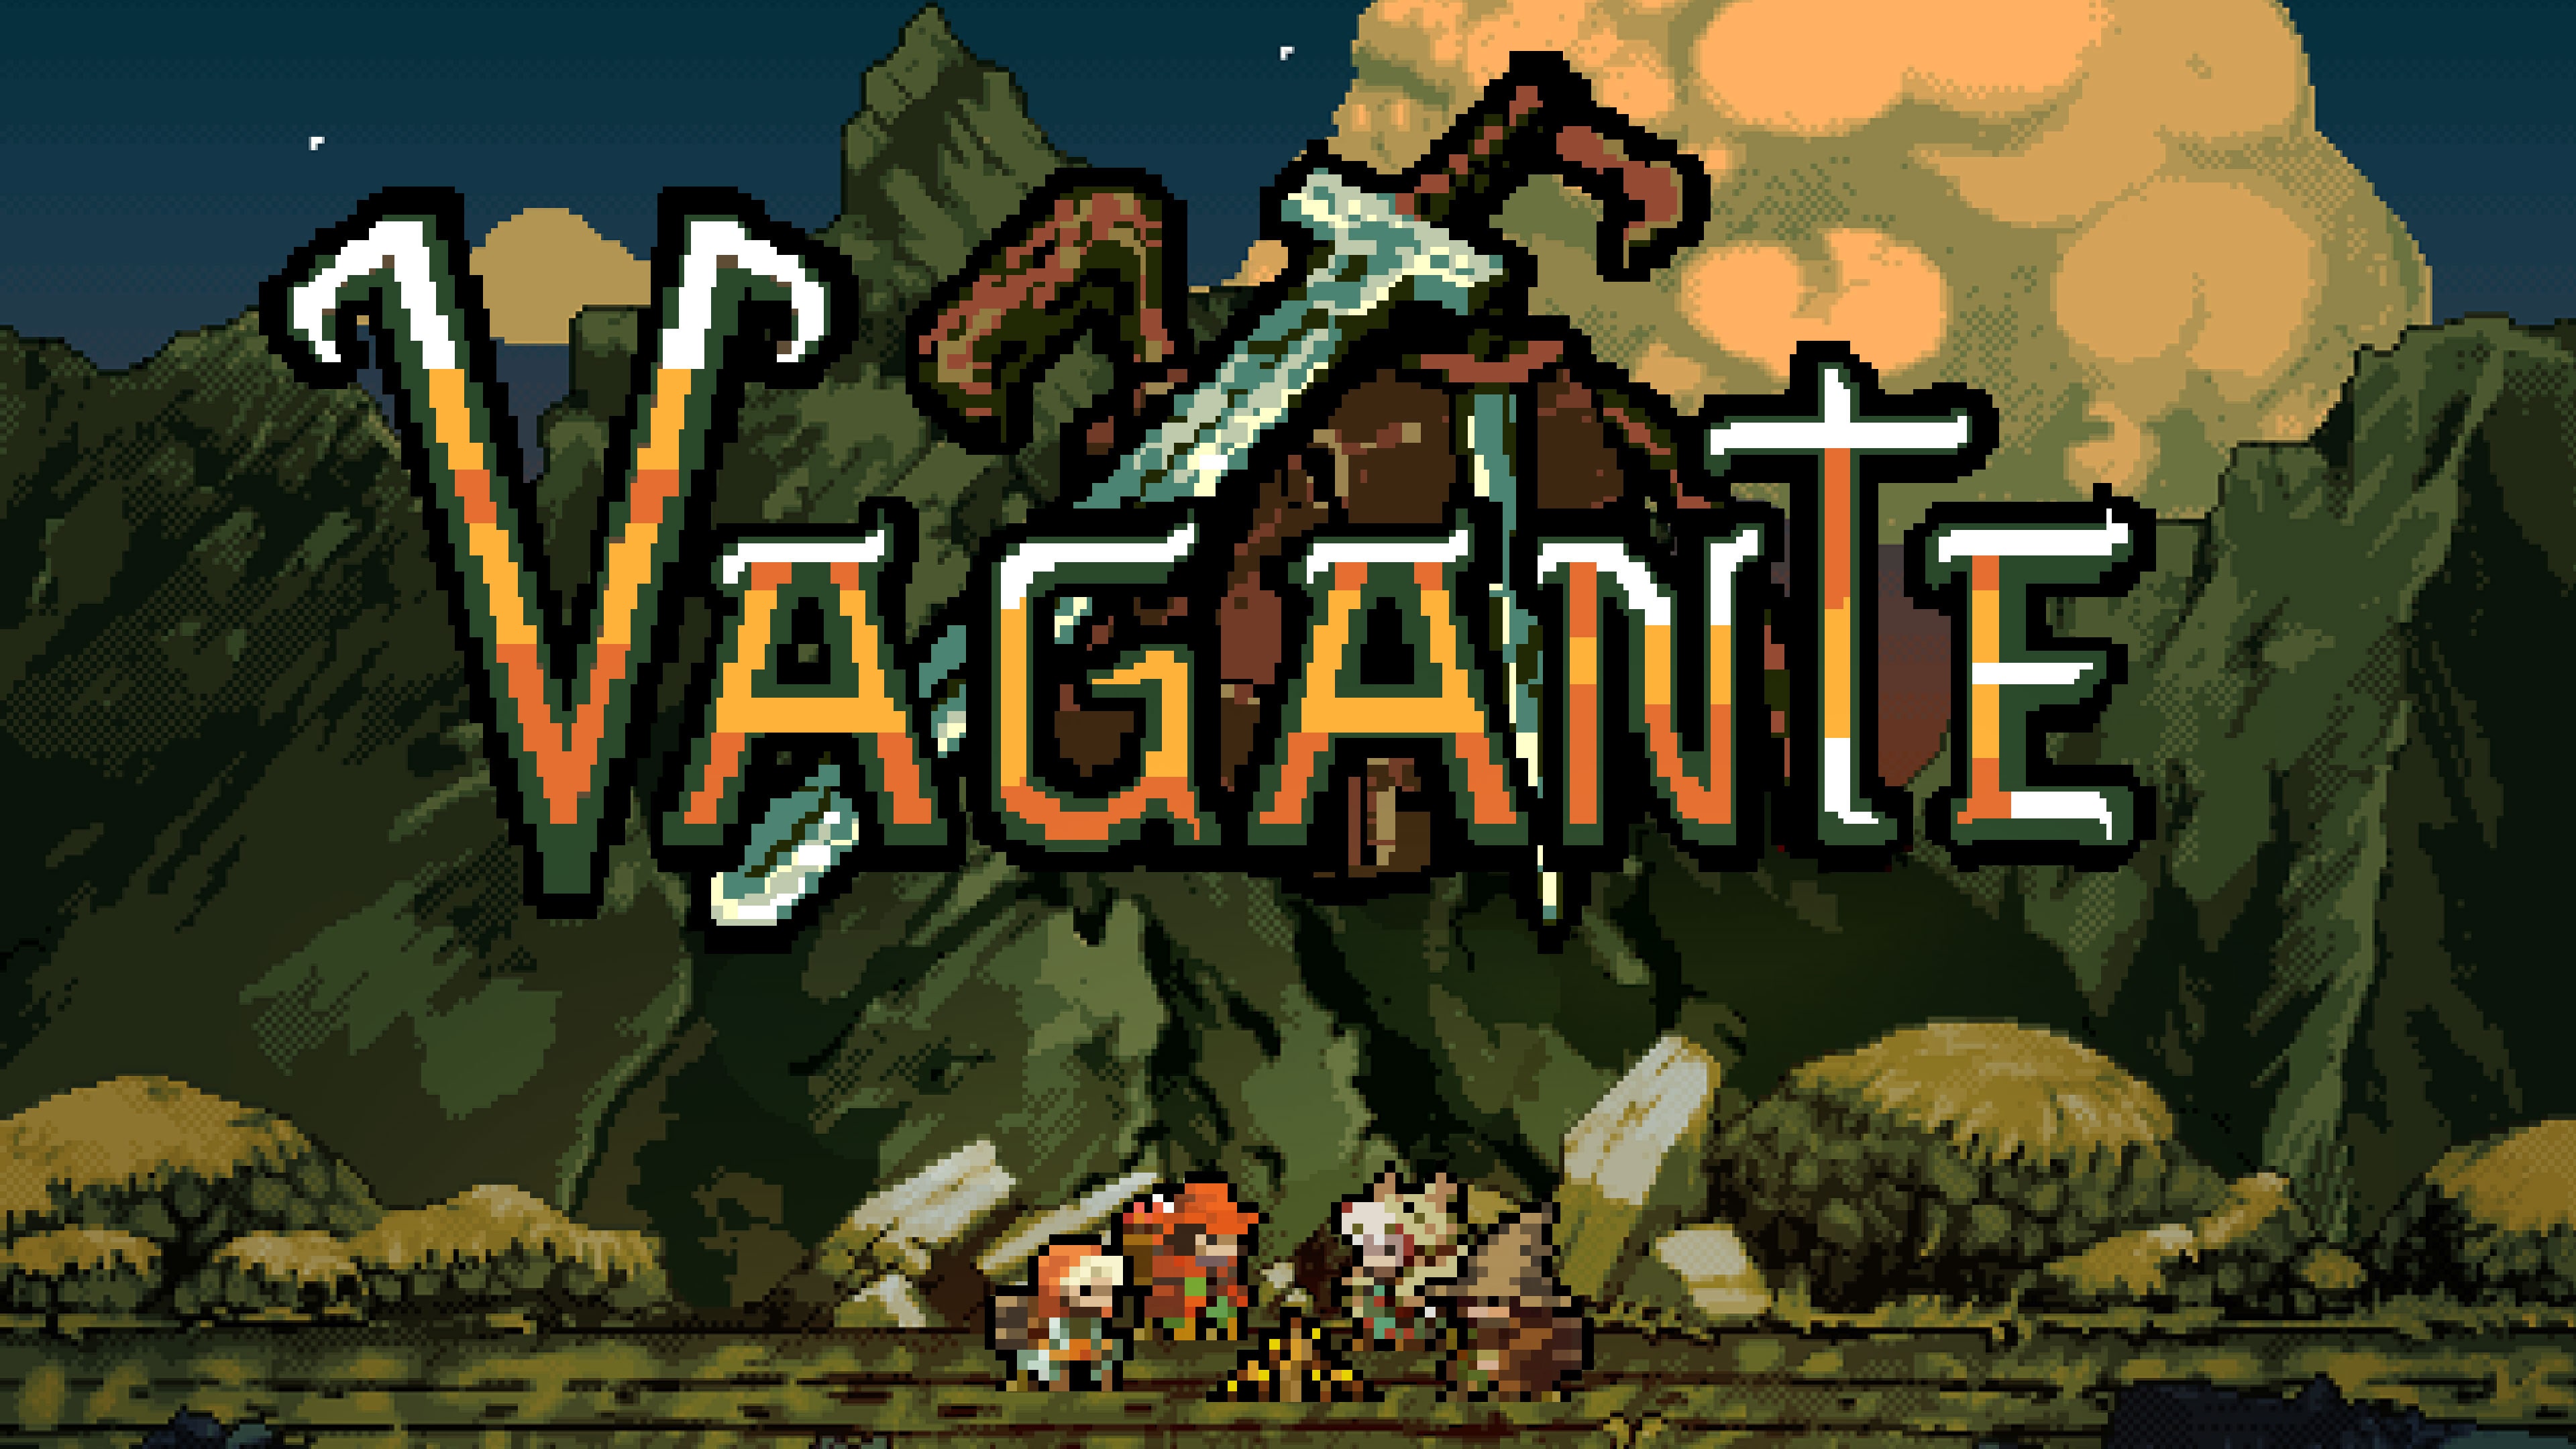 Vagante (Game + Theme)